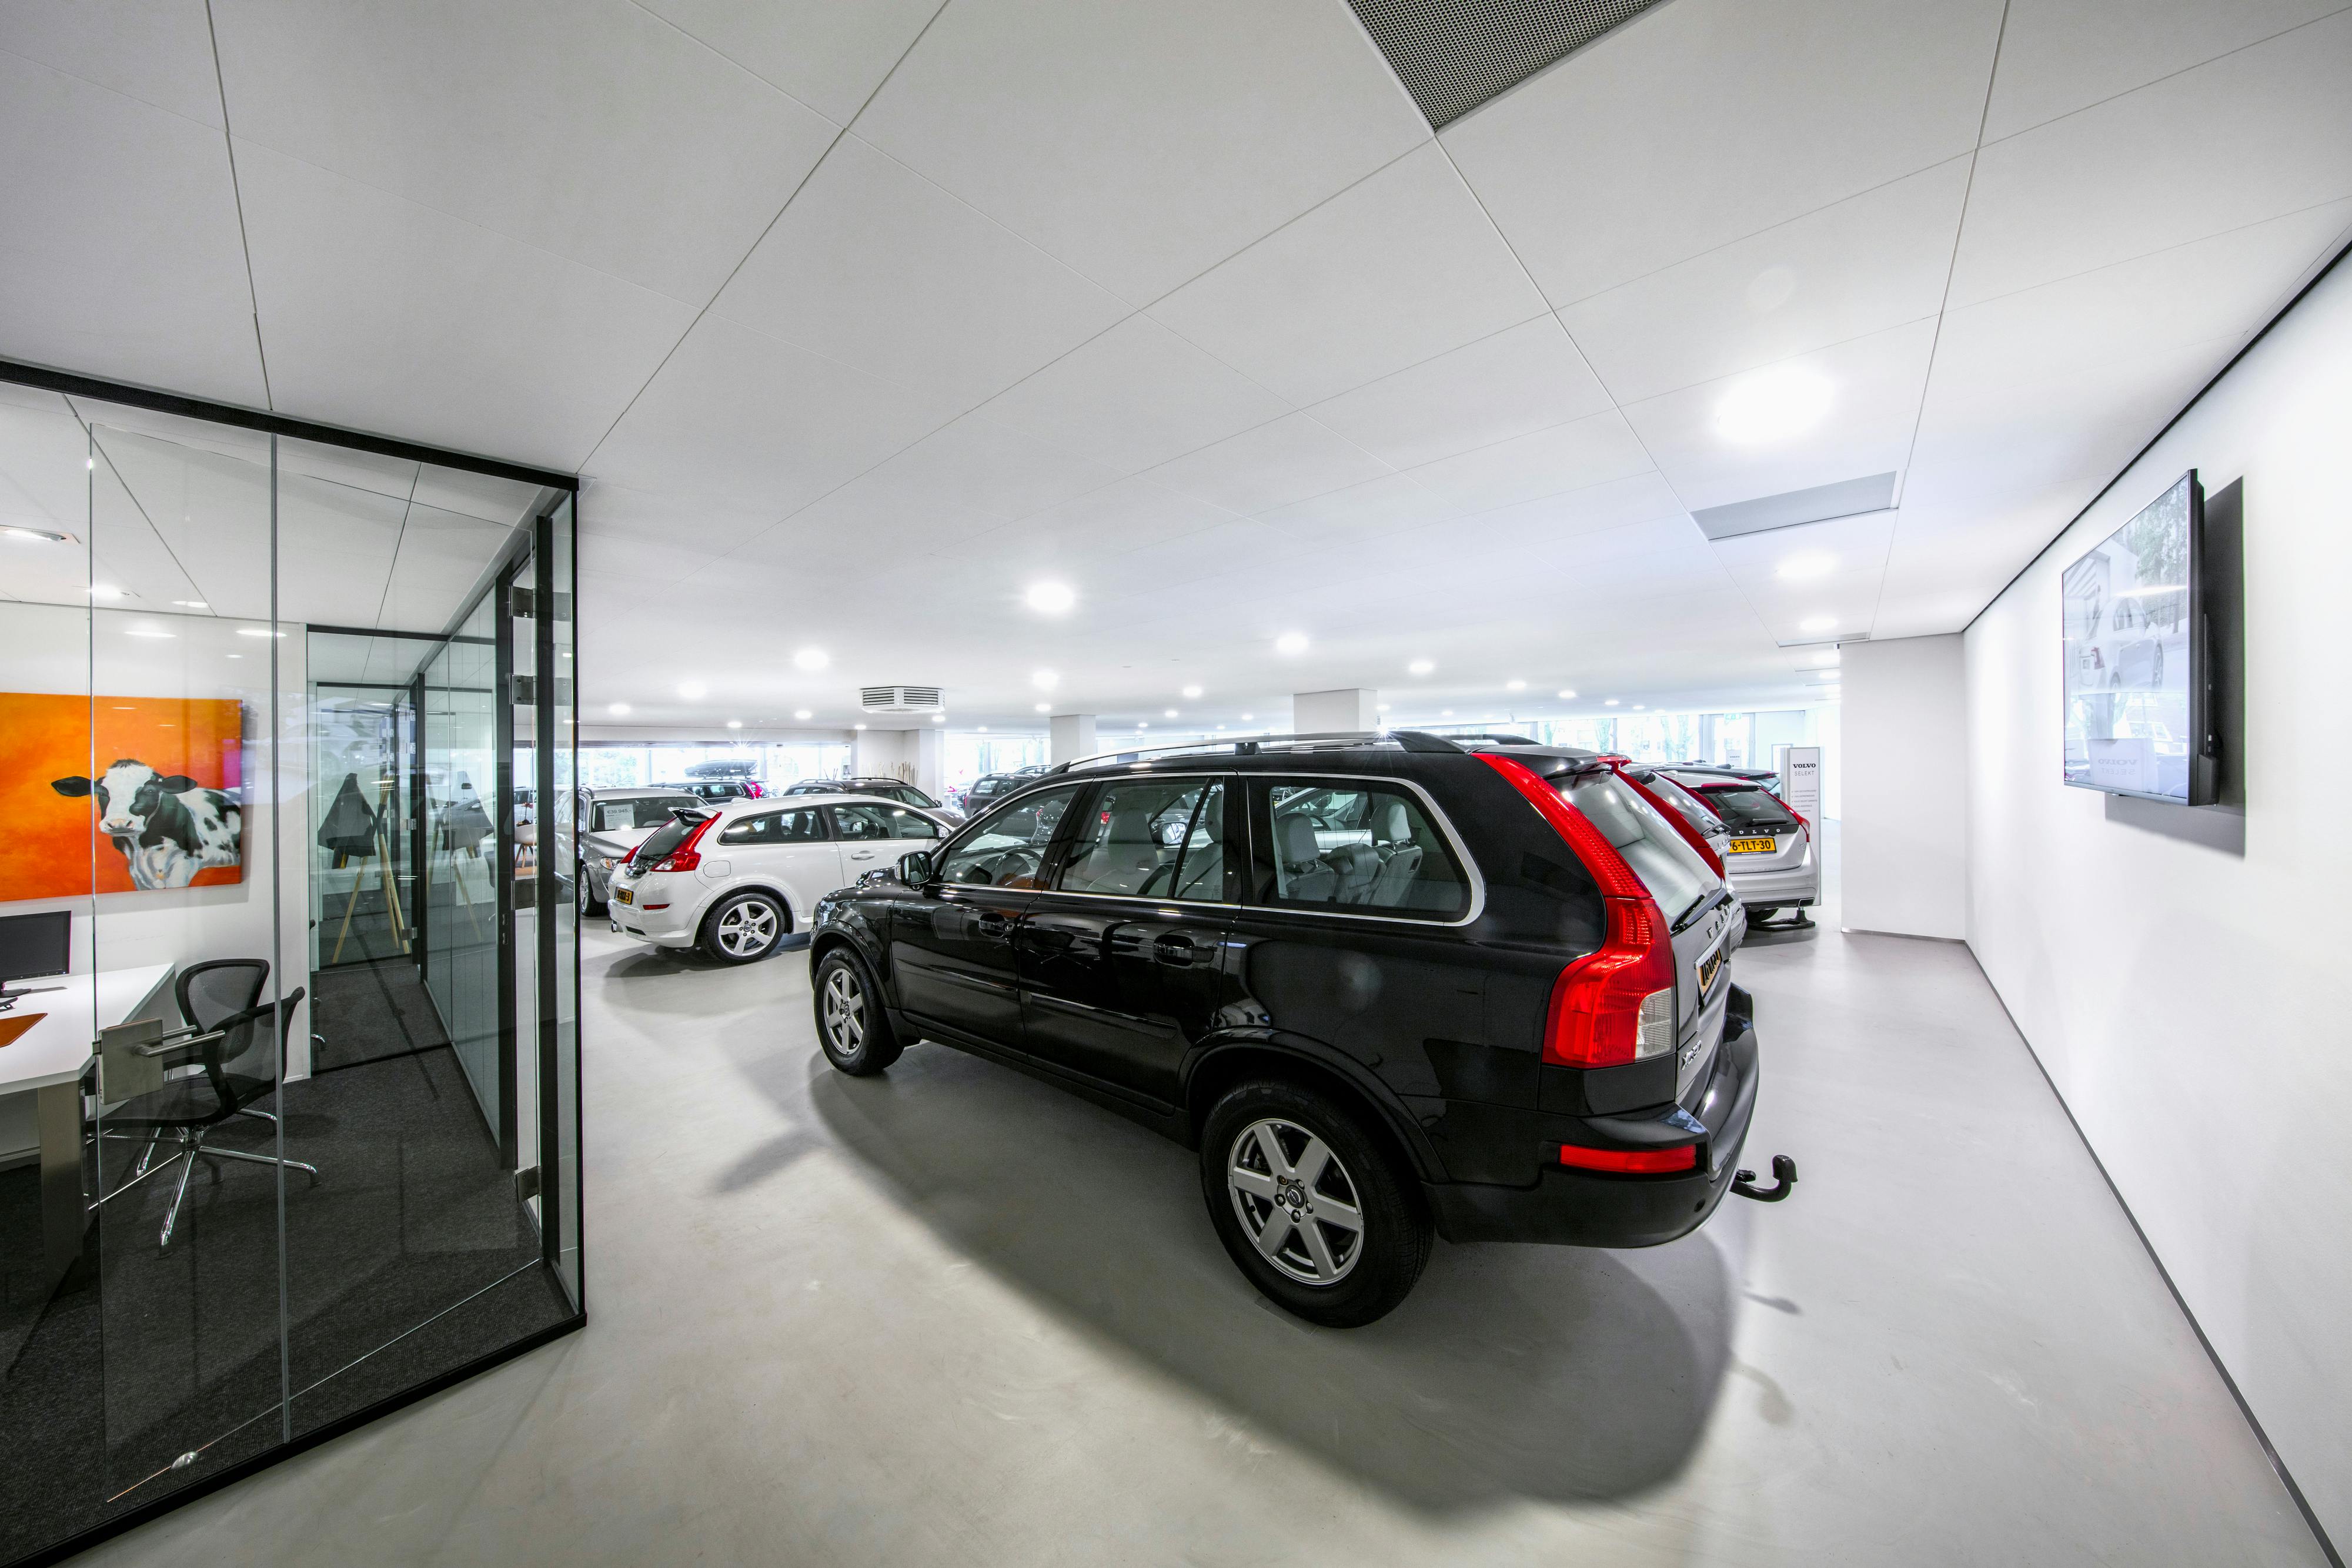 Volvo Mobility Centre,The Netherlands,Vlaardingen,750 m²,Toke Peelen,Volvo Netherlands,Bovero B.V.,ROCKFON Blanka,D-edge,600X600,White